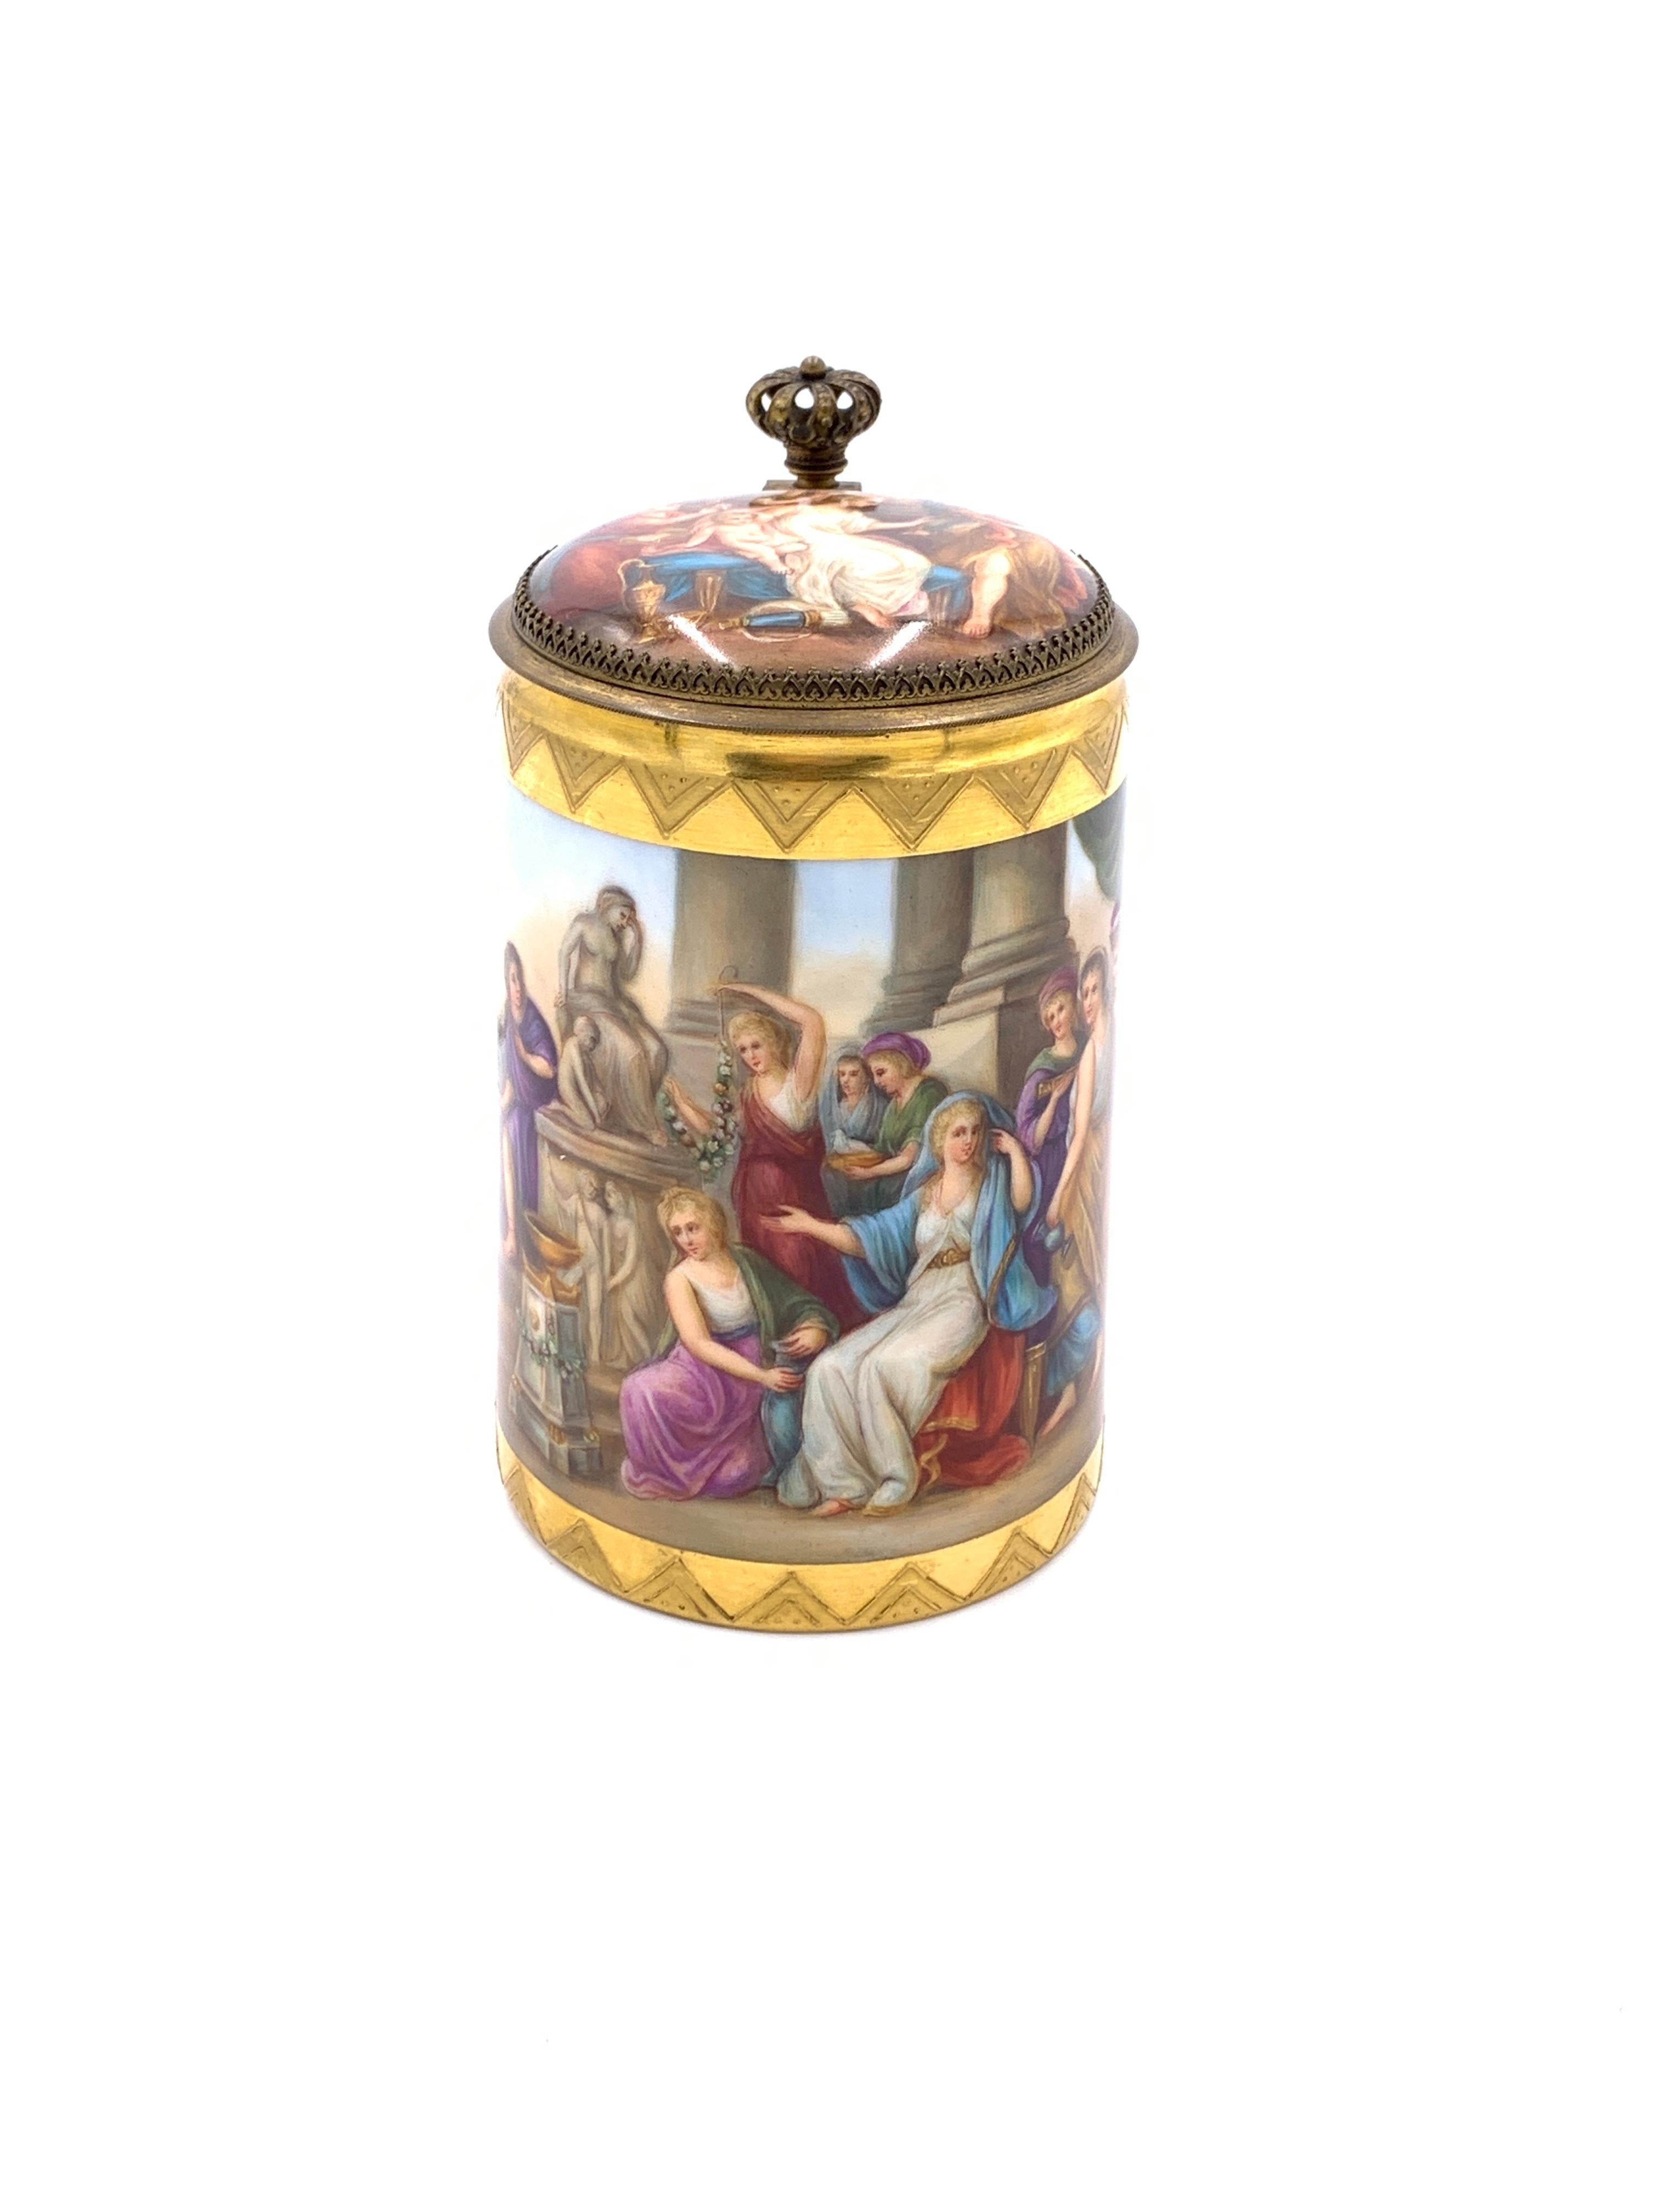 pichet à couvercle en porcelaine royale de Vienne du XIXe siècle, métal doré en forme de couronne au-dessus de l'anse et attaché au couvercle, décor tout autour de la face extérieure et sur le couvercle intérieur, marque de ruche bleue estampée sur